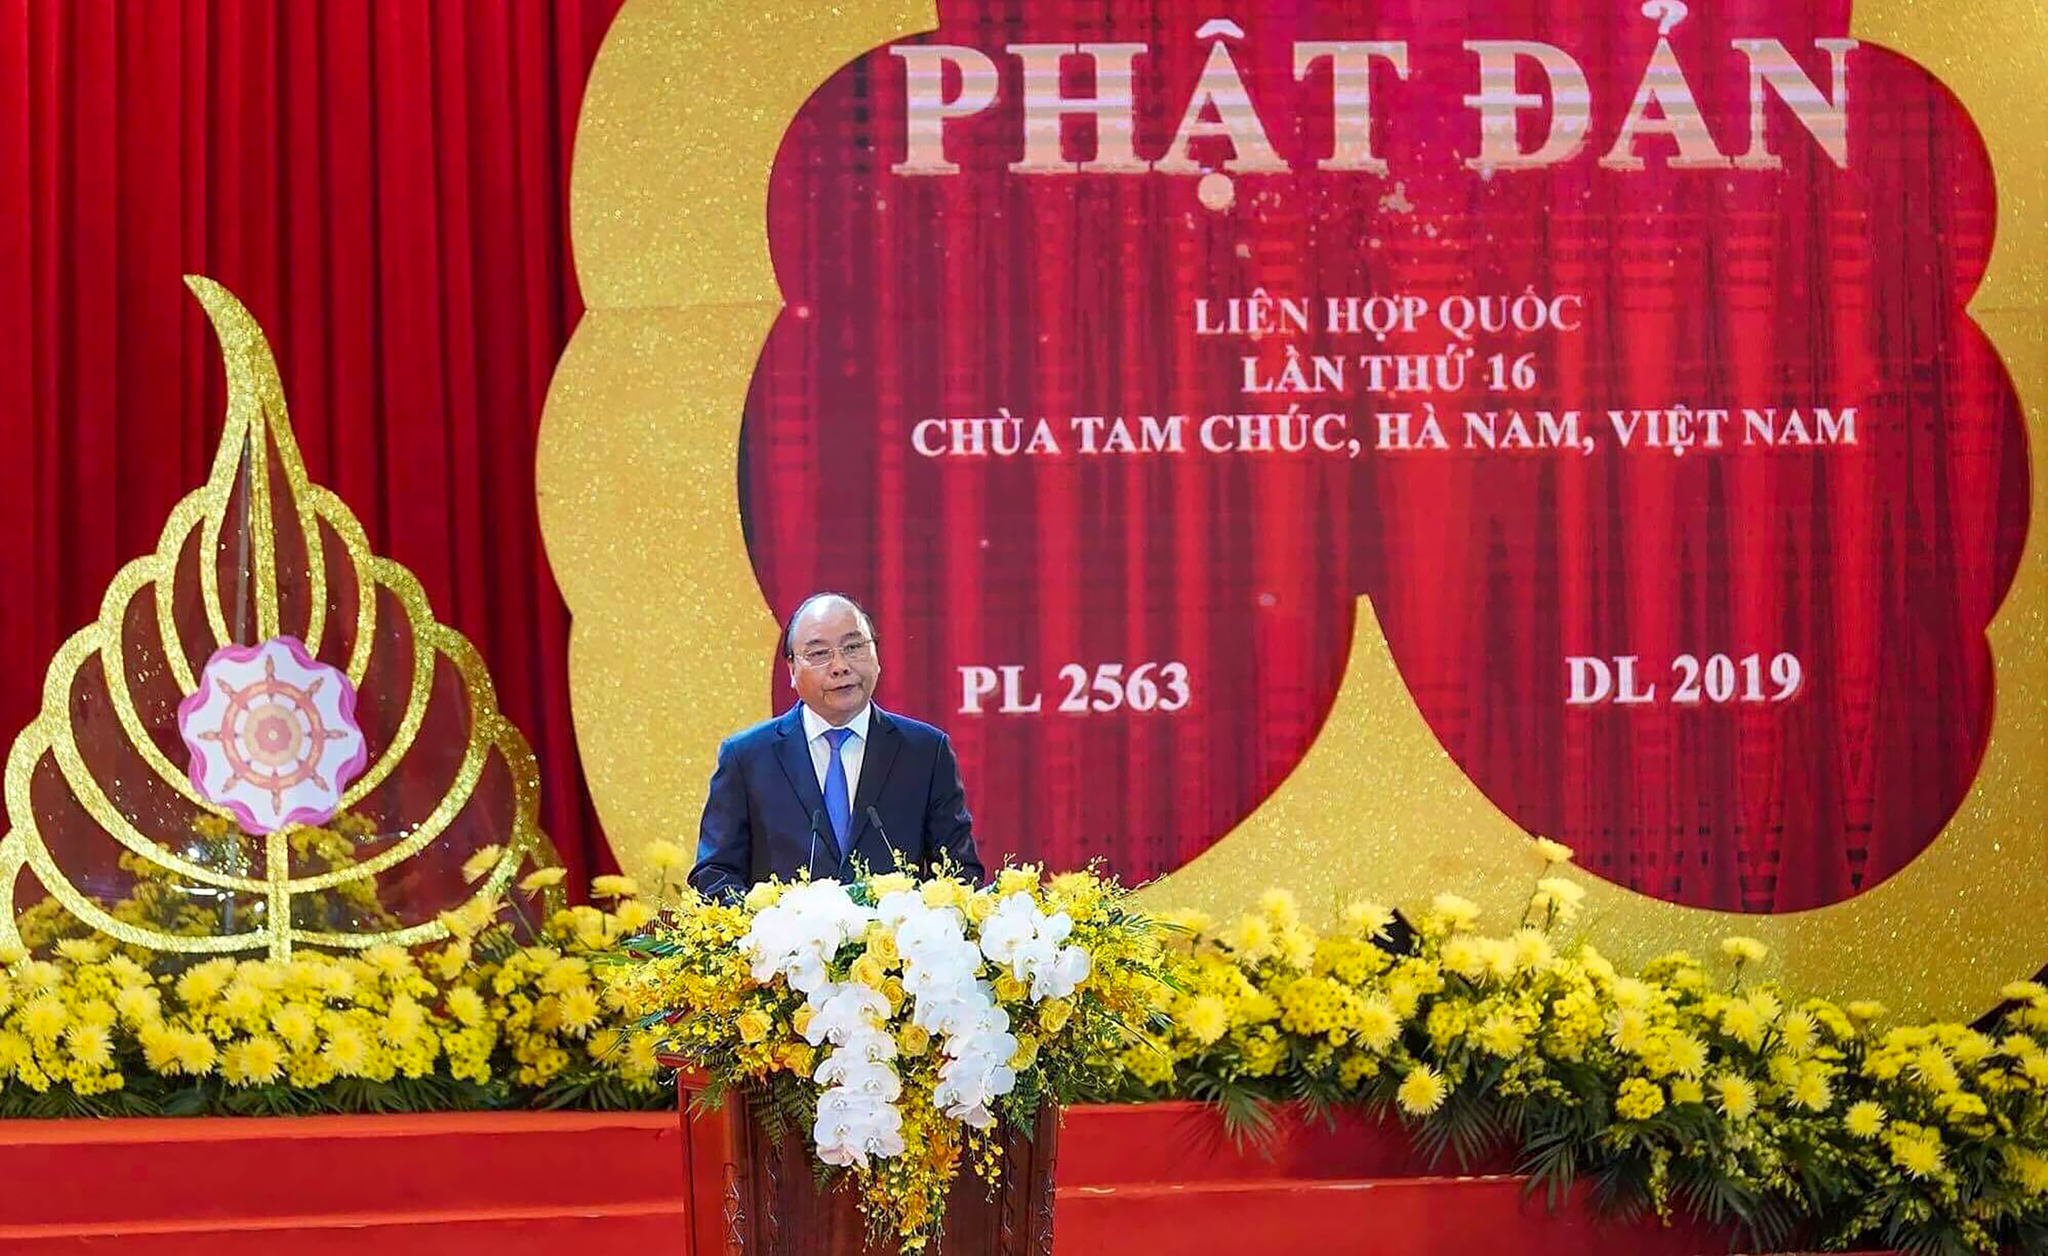 Ban tổ chức đại lễ Vesak 2019 cũng đã nhận được hơn 500 bài tham luận của học giả quốc tế và Việt Nam, cùng làm rõ chủ đề của Vesak 2019 - Cách tiếp cận của Phật giáo về sự lãnh đạo toàn cầu và trách nhiệm cùng chia sẻ vì xã hội bền vững.